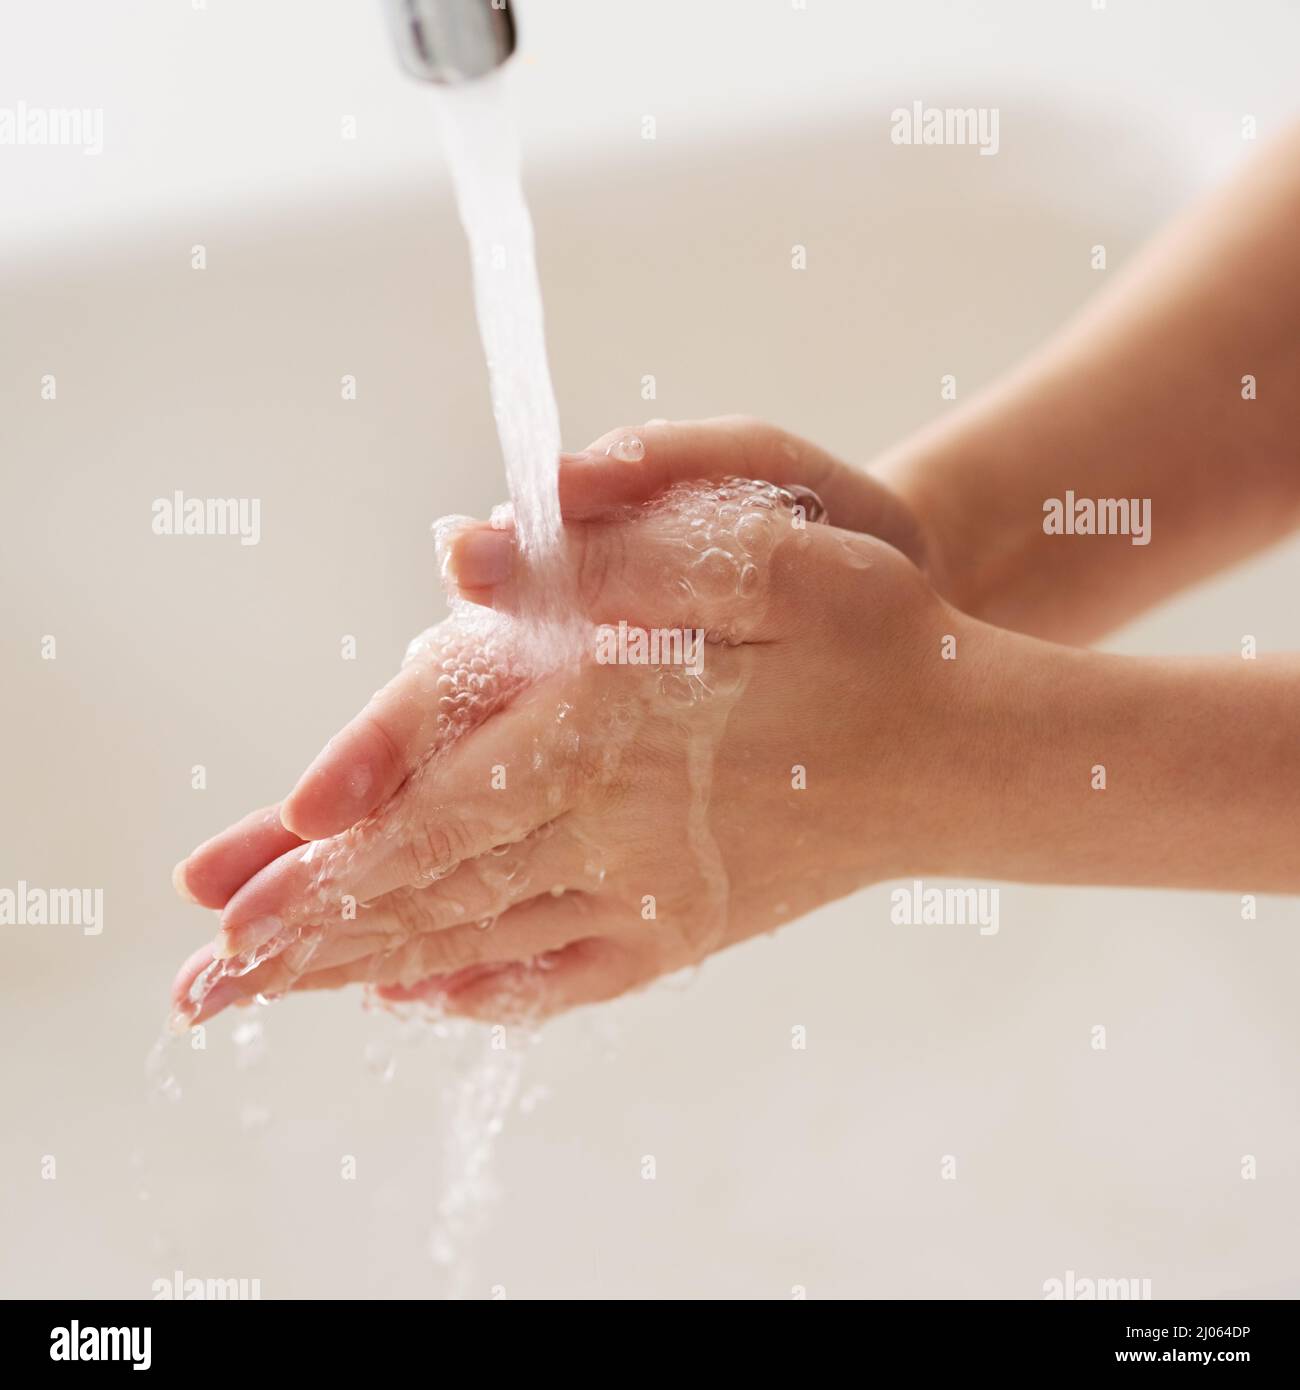 Beim Reiben abspülen. Abgeschnittene Aufnahme der Hände, die mit fließendem Wasser gewaschen wurden. Stockfoto